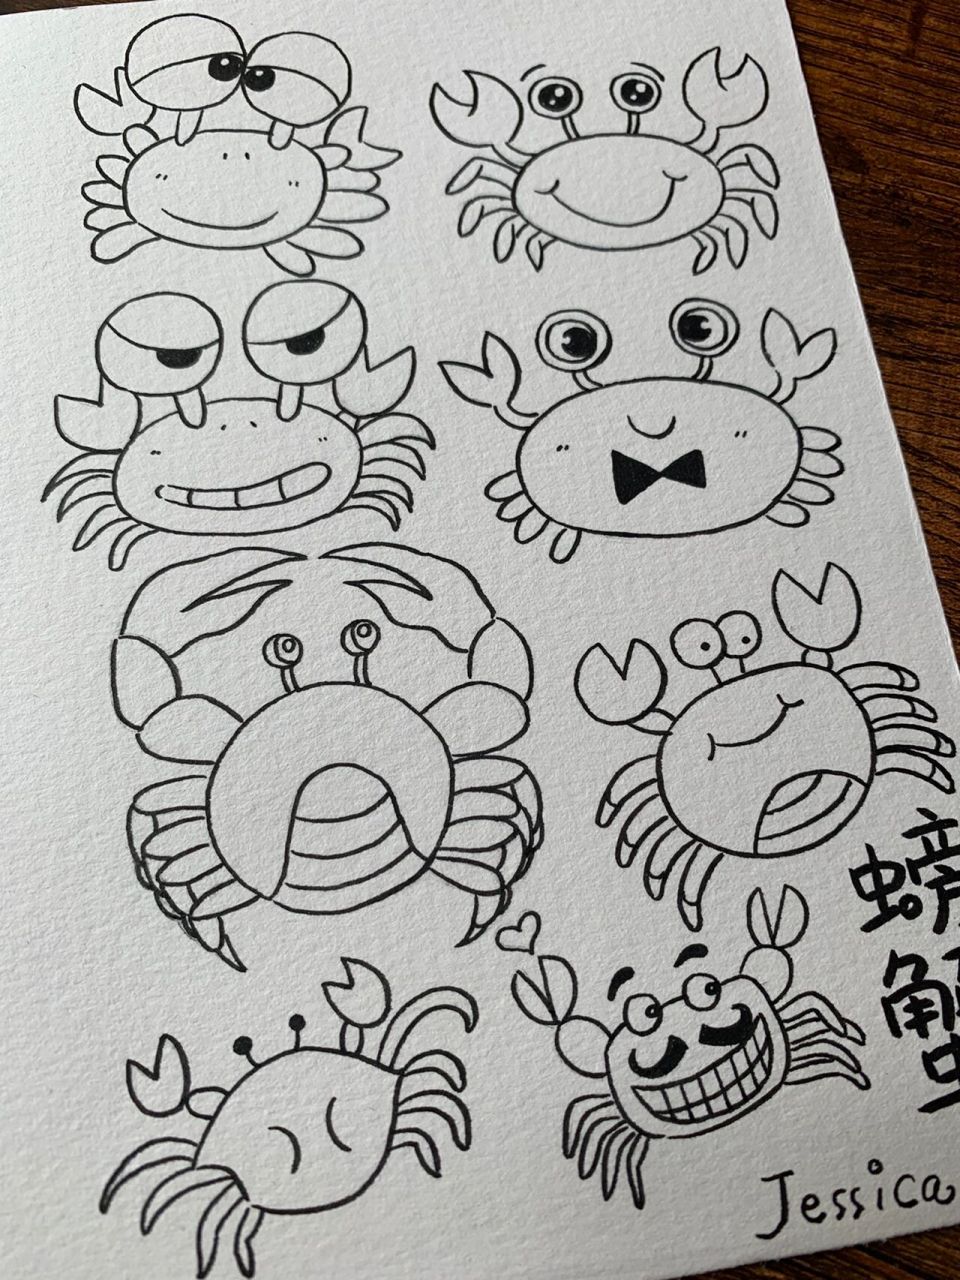 螃蟹主题手帐手绘简笔画素材黑白线稿上色图 小螃蟹也可以可可爱爱